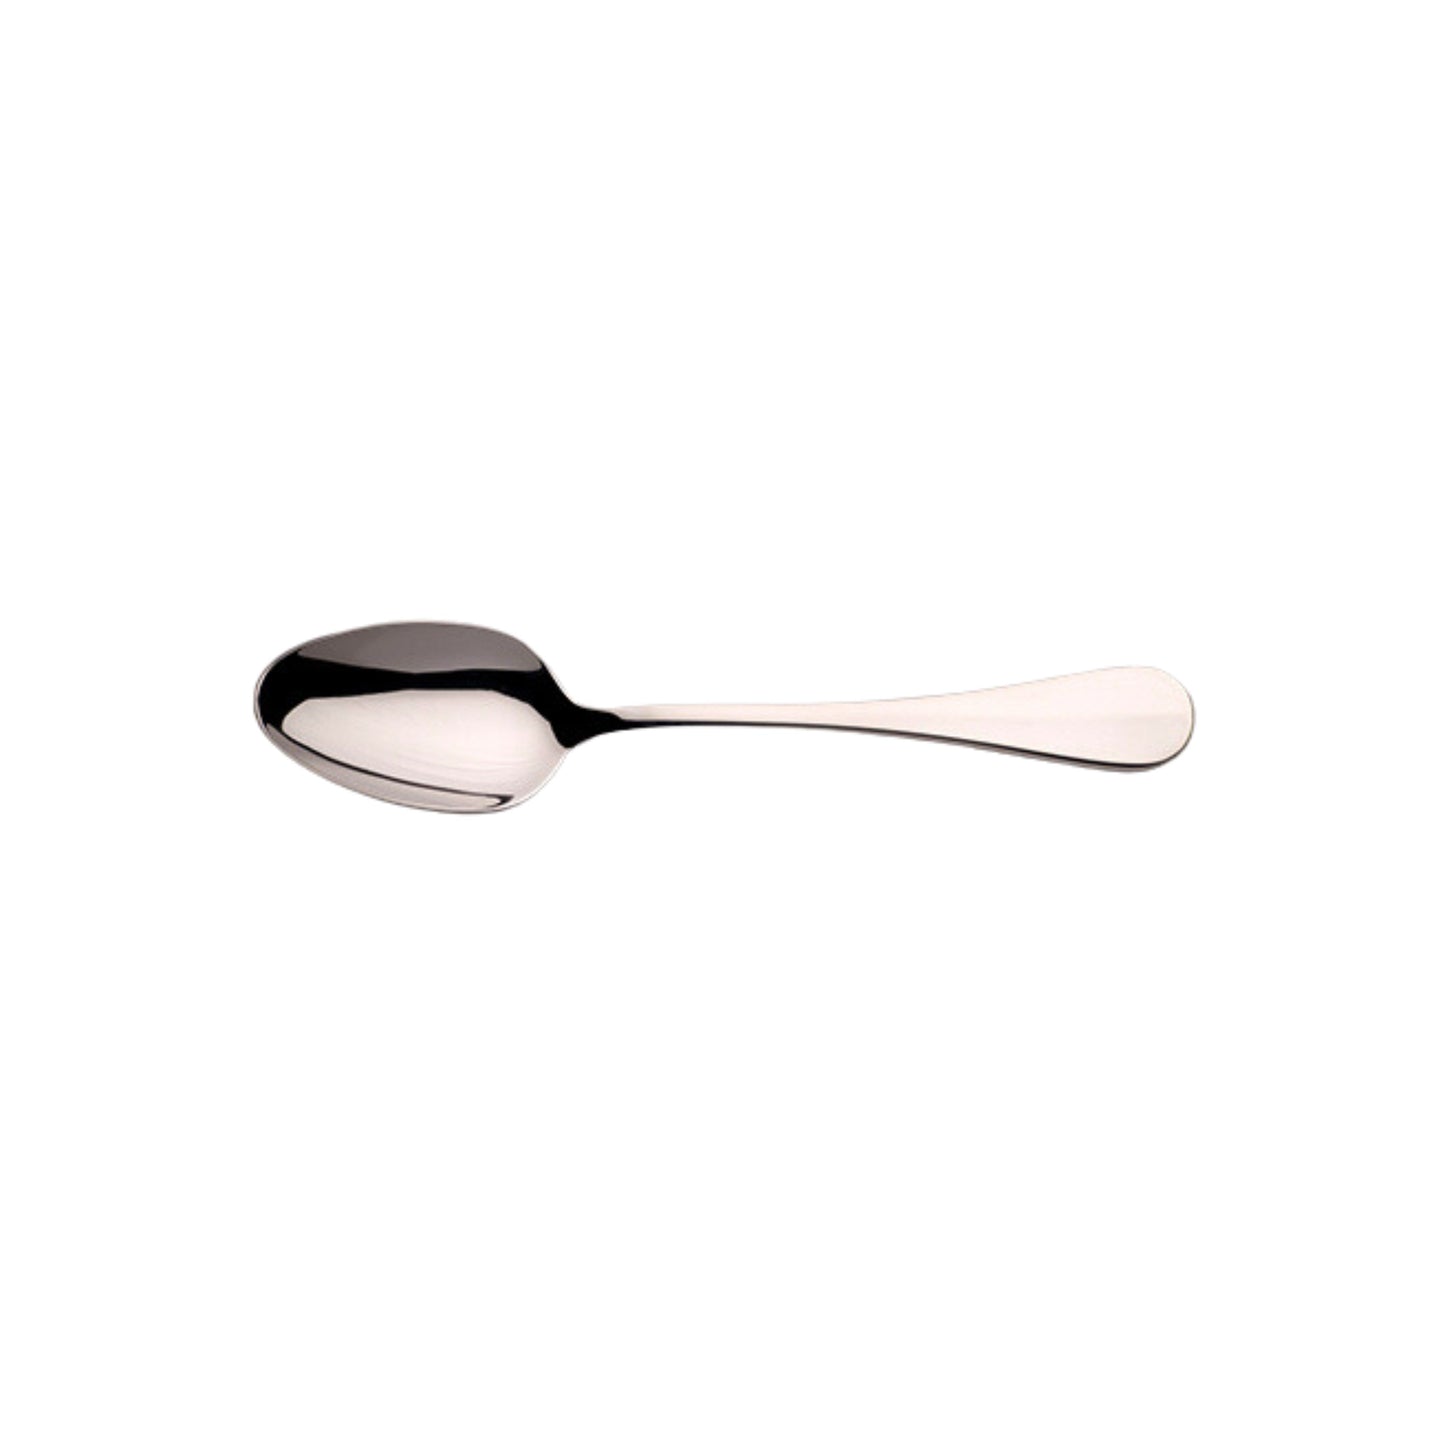 Plain Fiddle stainless steel flatware cutlery